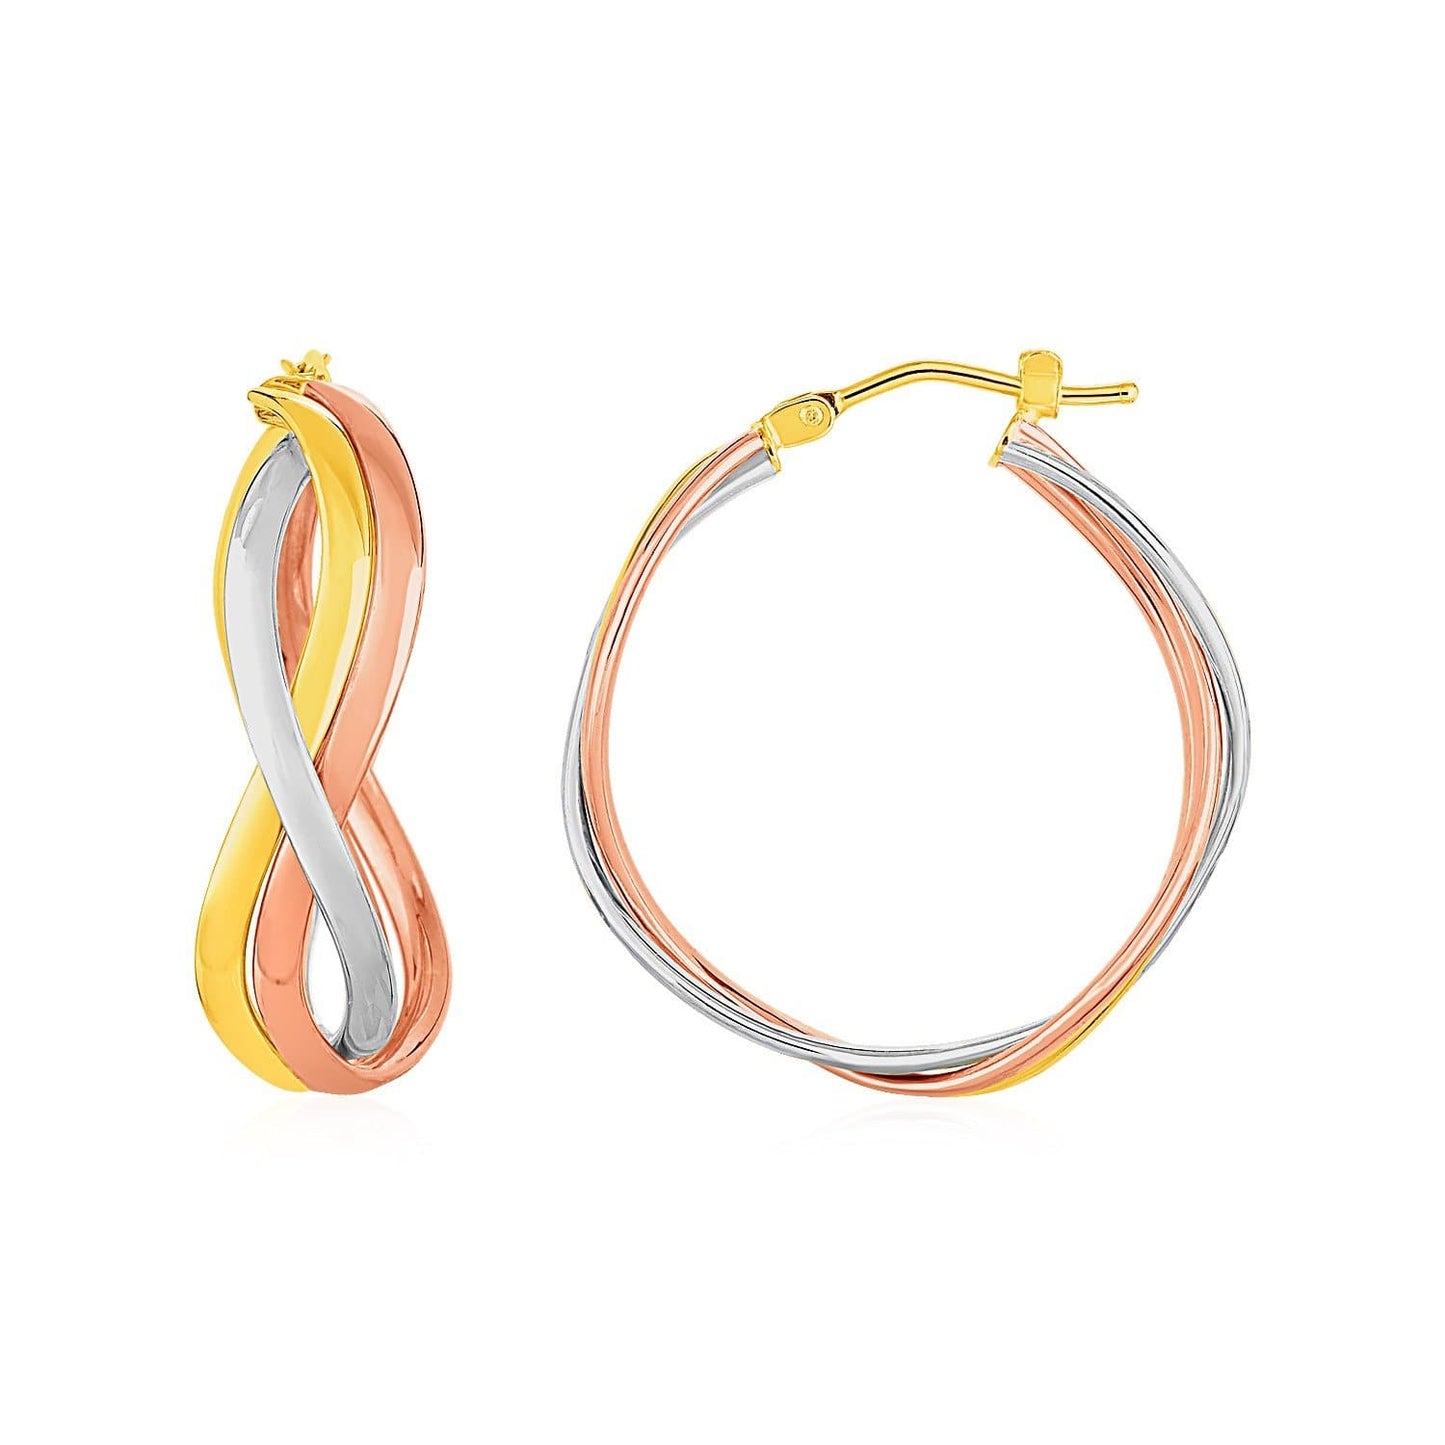 Three Part Wavy Hoop Earrings in 14k Tri Color Gold